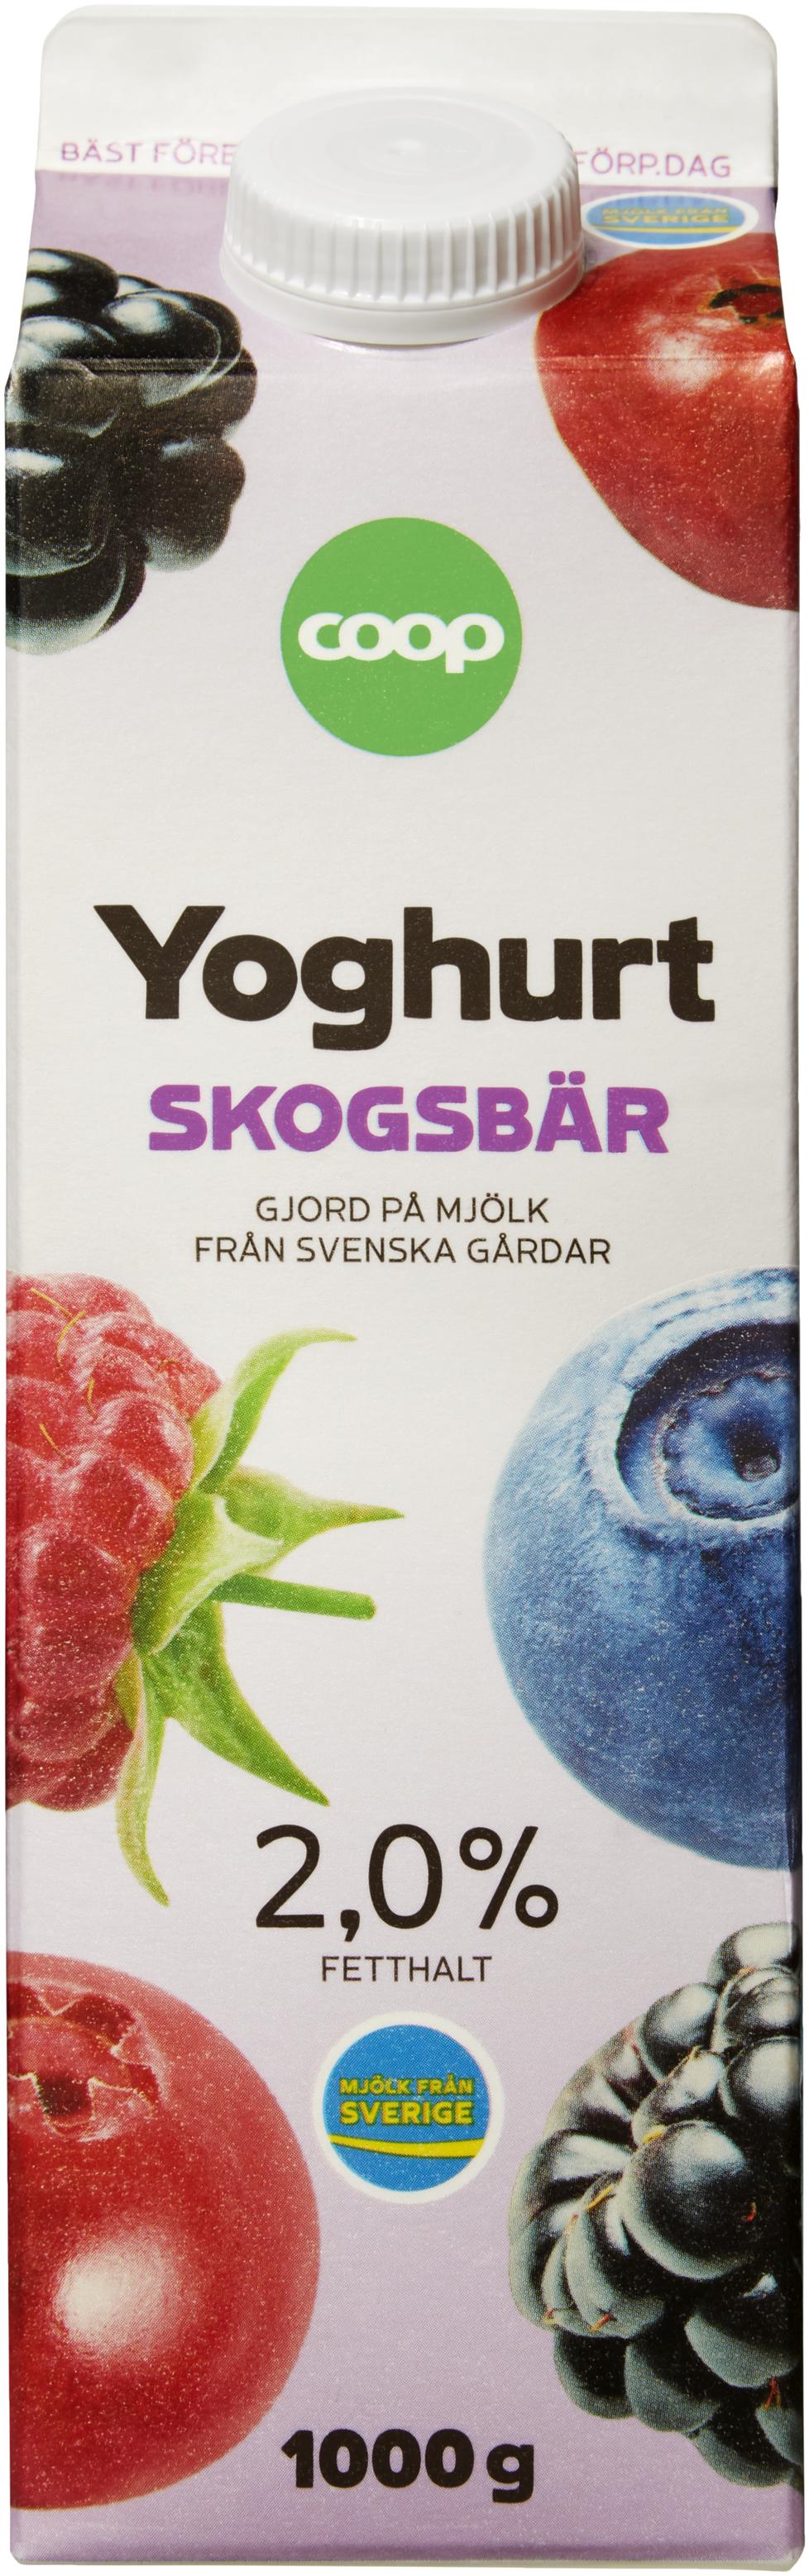 Yoghurt Skogsbär för 22,95 kr på Coop